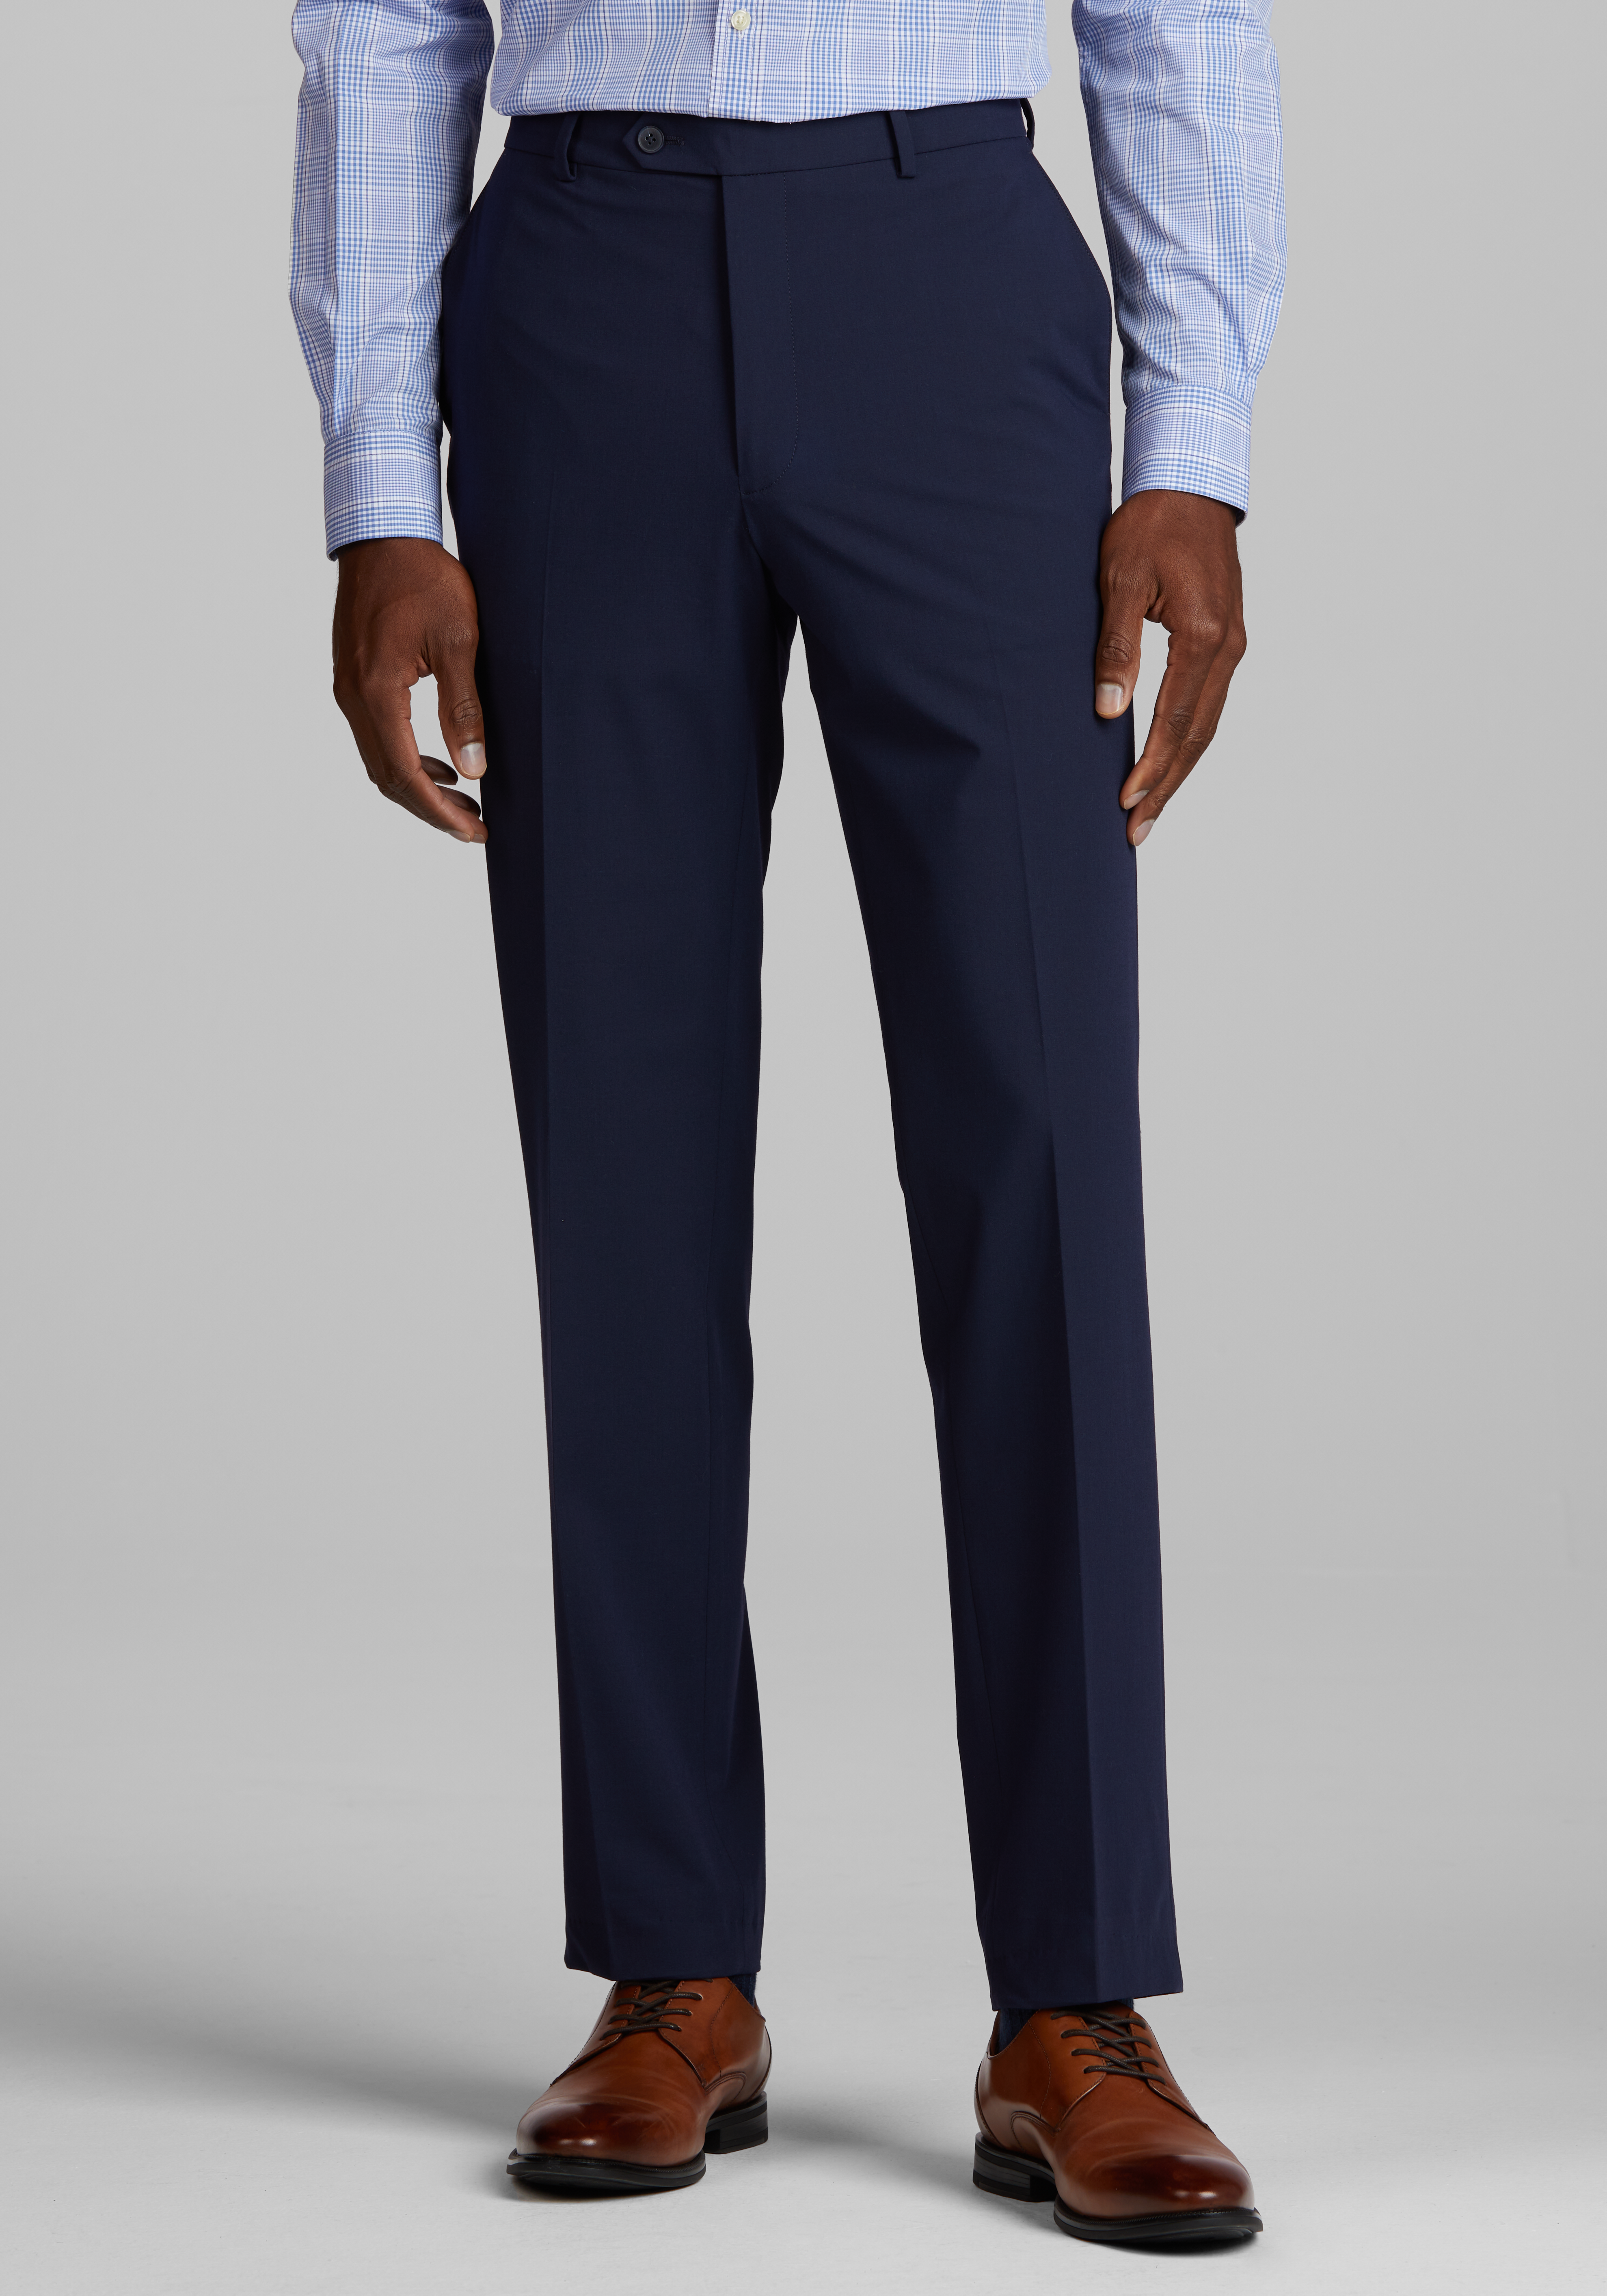 Calvin Klein Slim Fit Suit Separates Linen-Blend Pants, All Sale